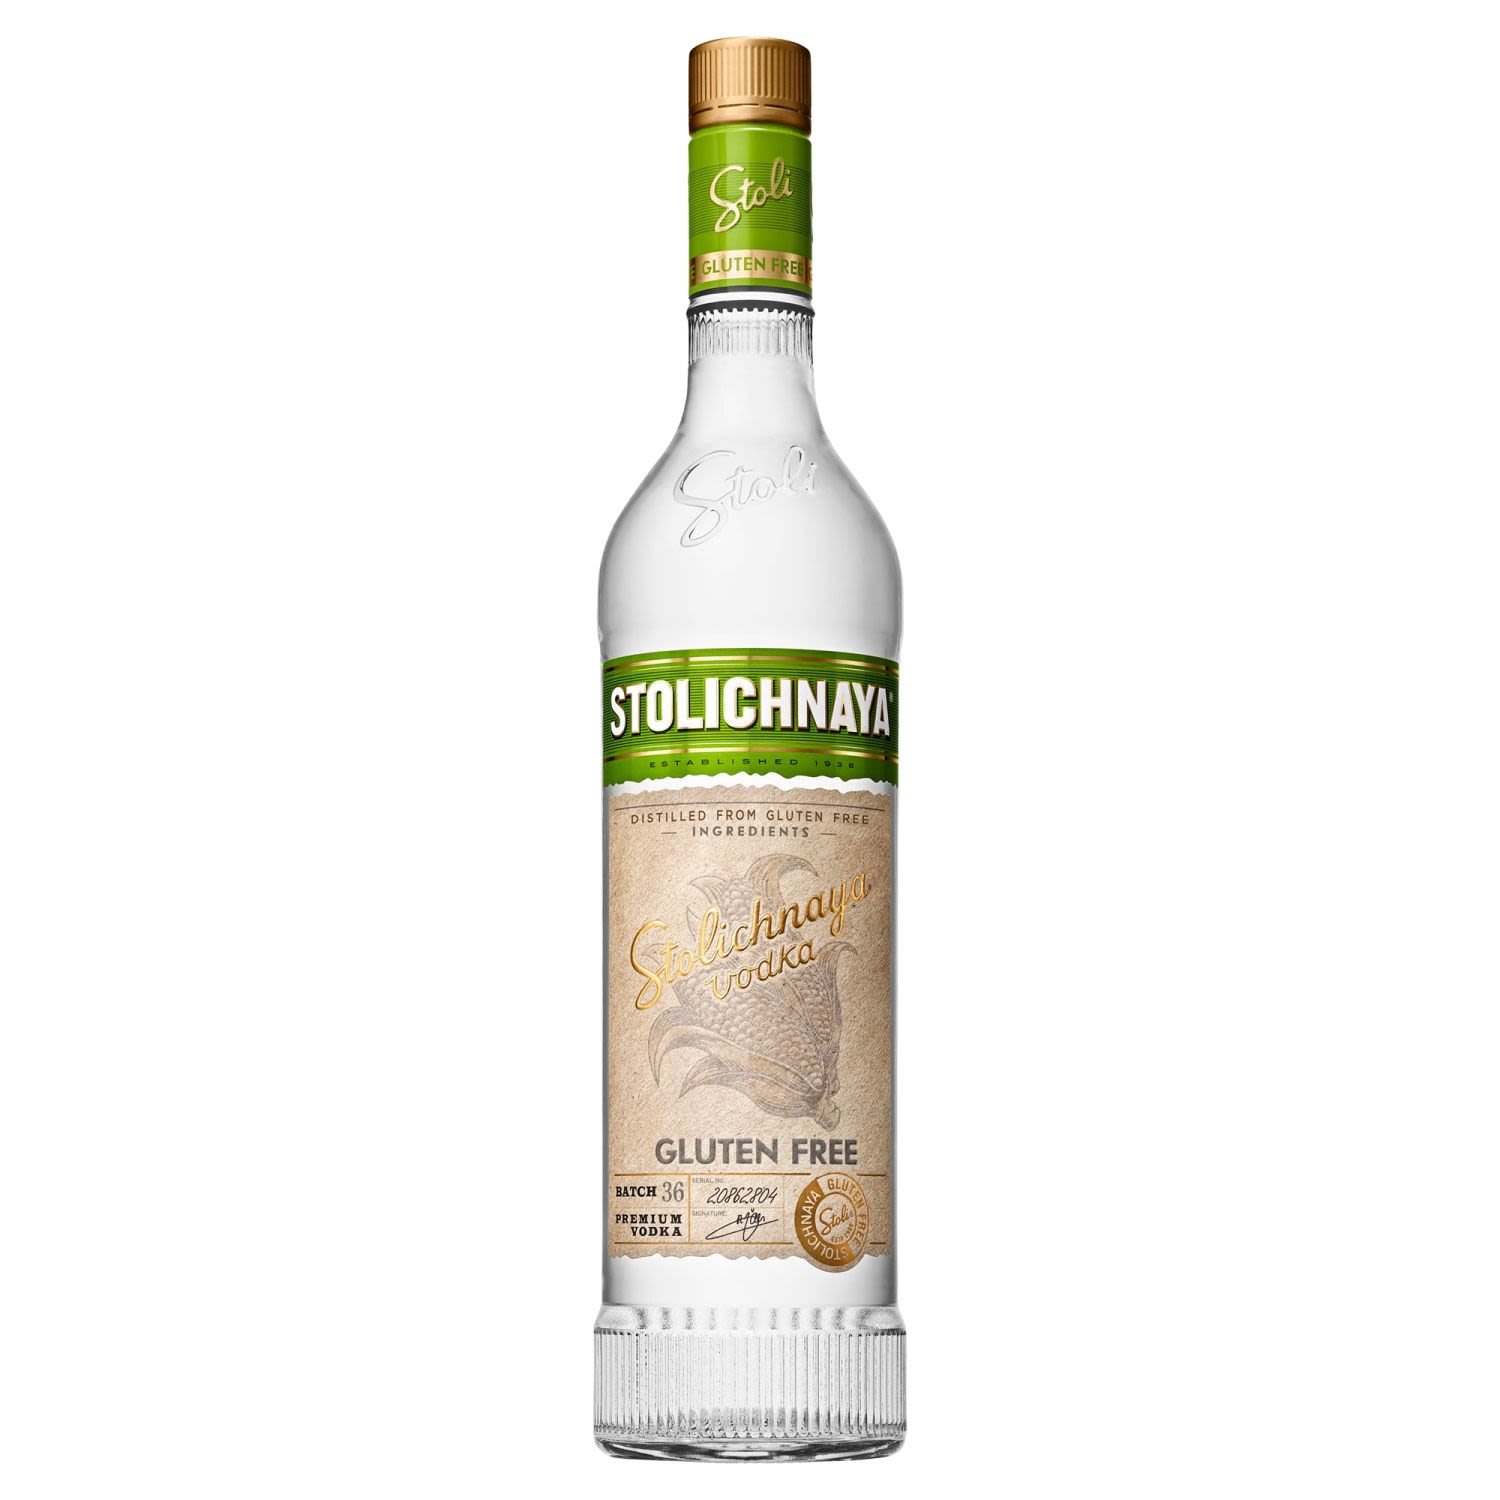 Stolichnaya Gluten Free Vodka 700mL Bottle